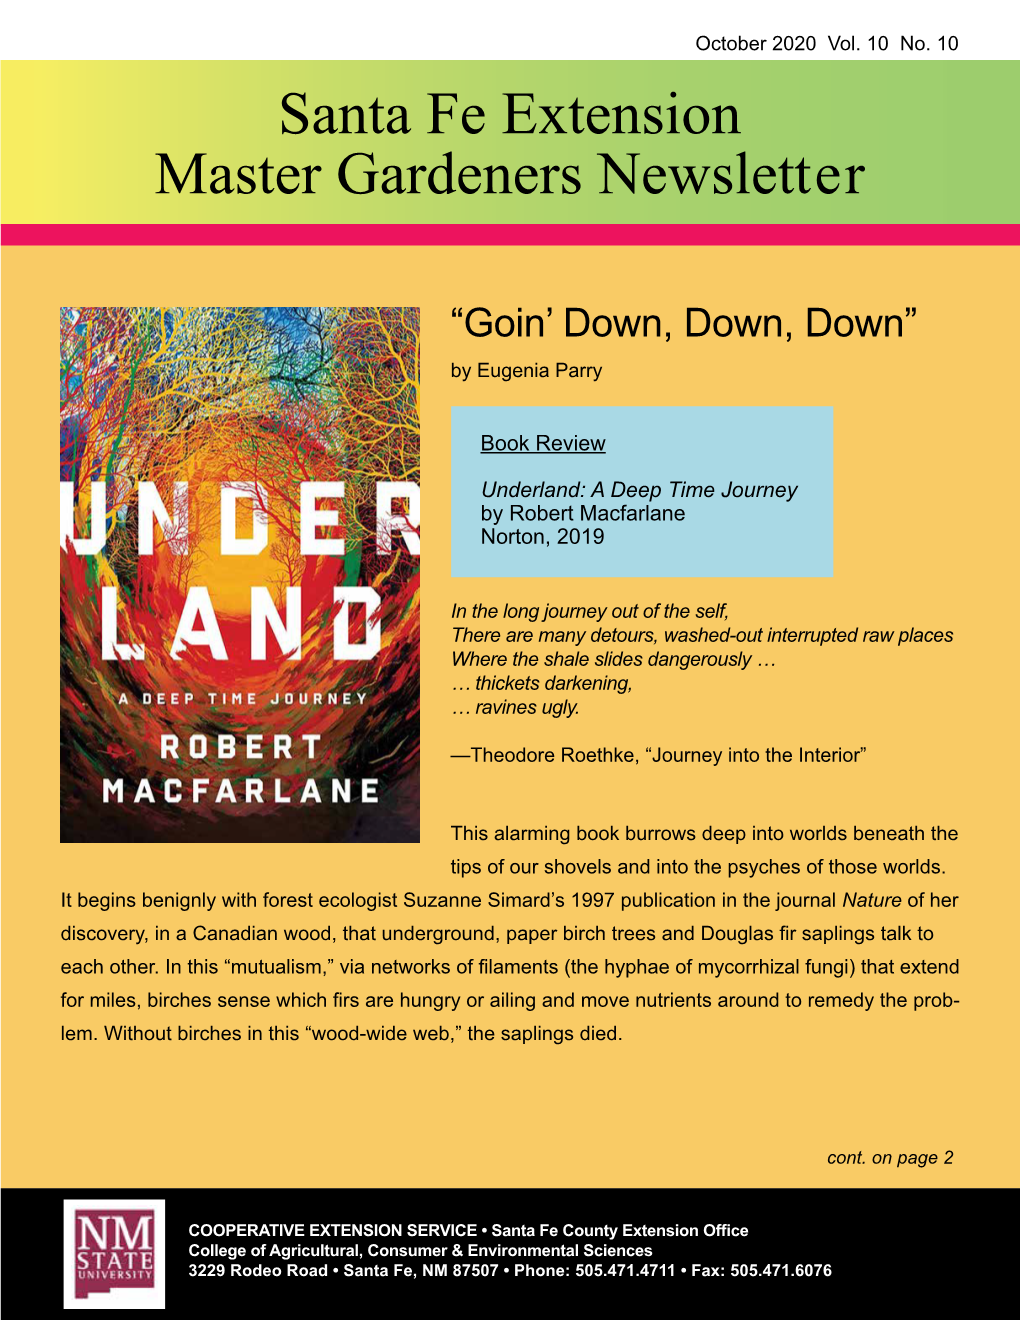 Santa Fe Extension Master Gardeners Newsletter